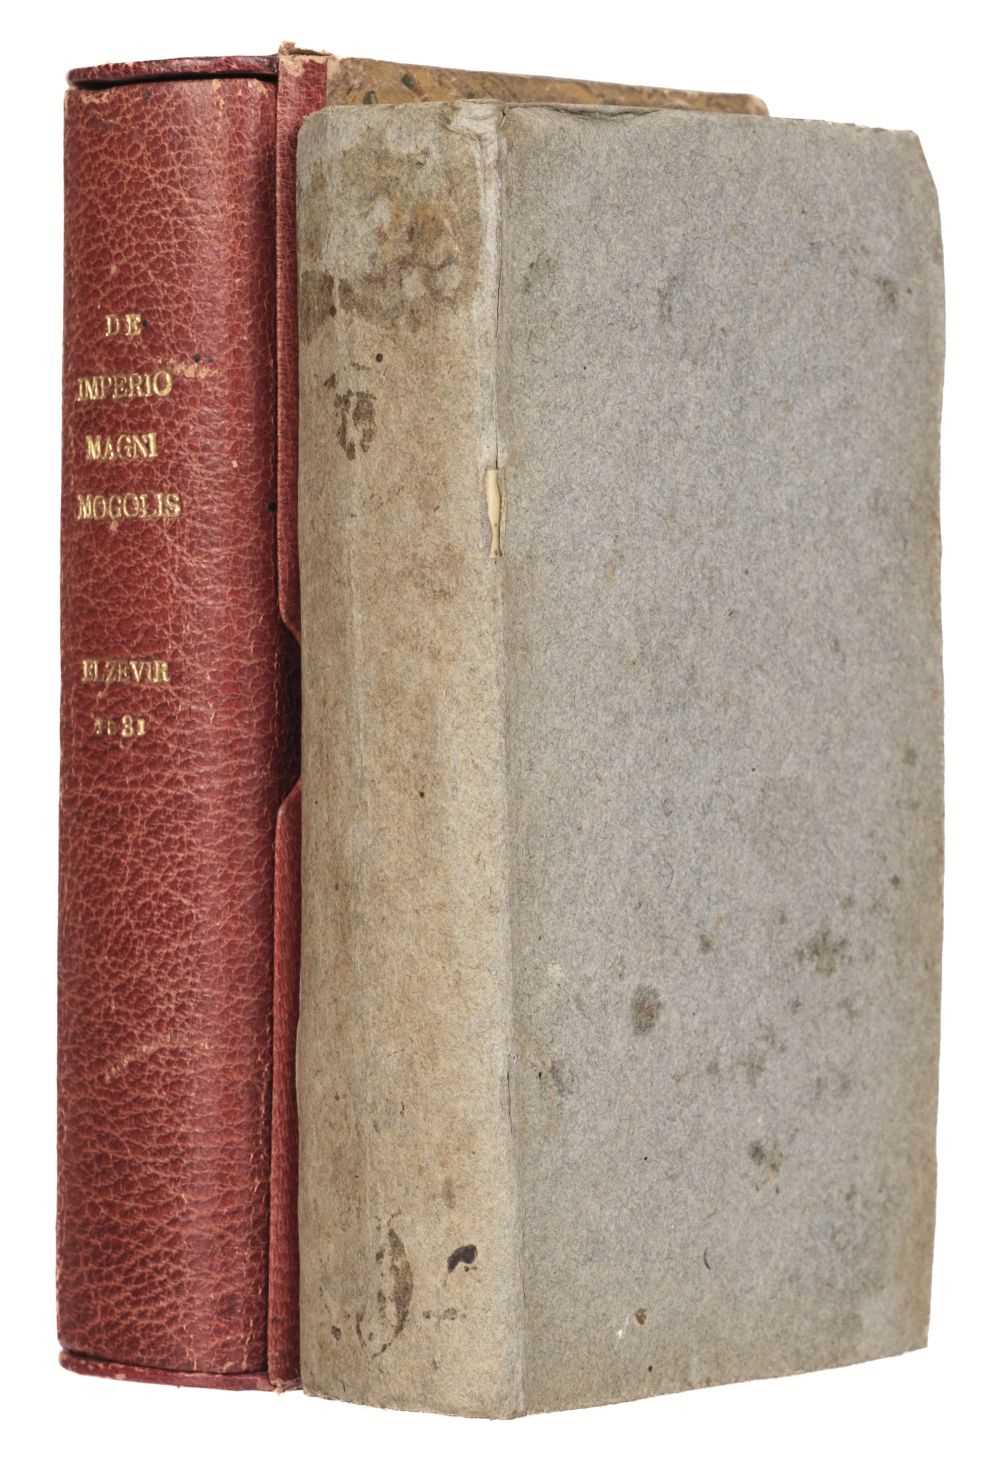 Lot 21 - Elzevir Press. De Imperio Magni Mogolis sive India vera commentarius... , Leiden: Elzevir, 1631